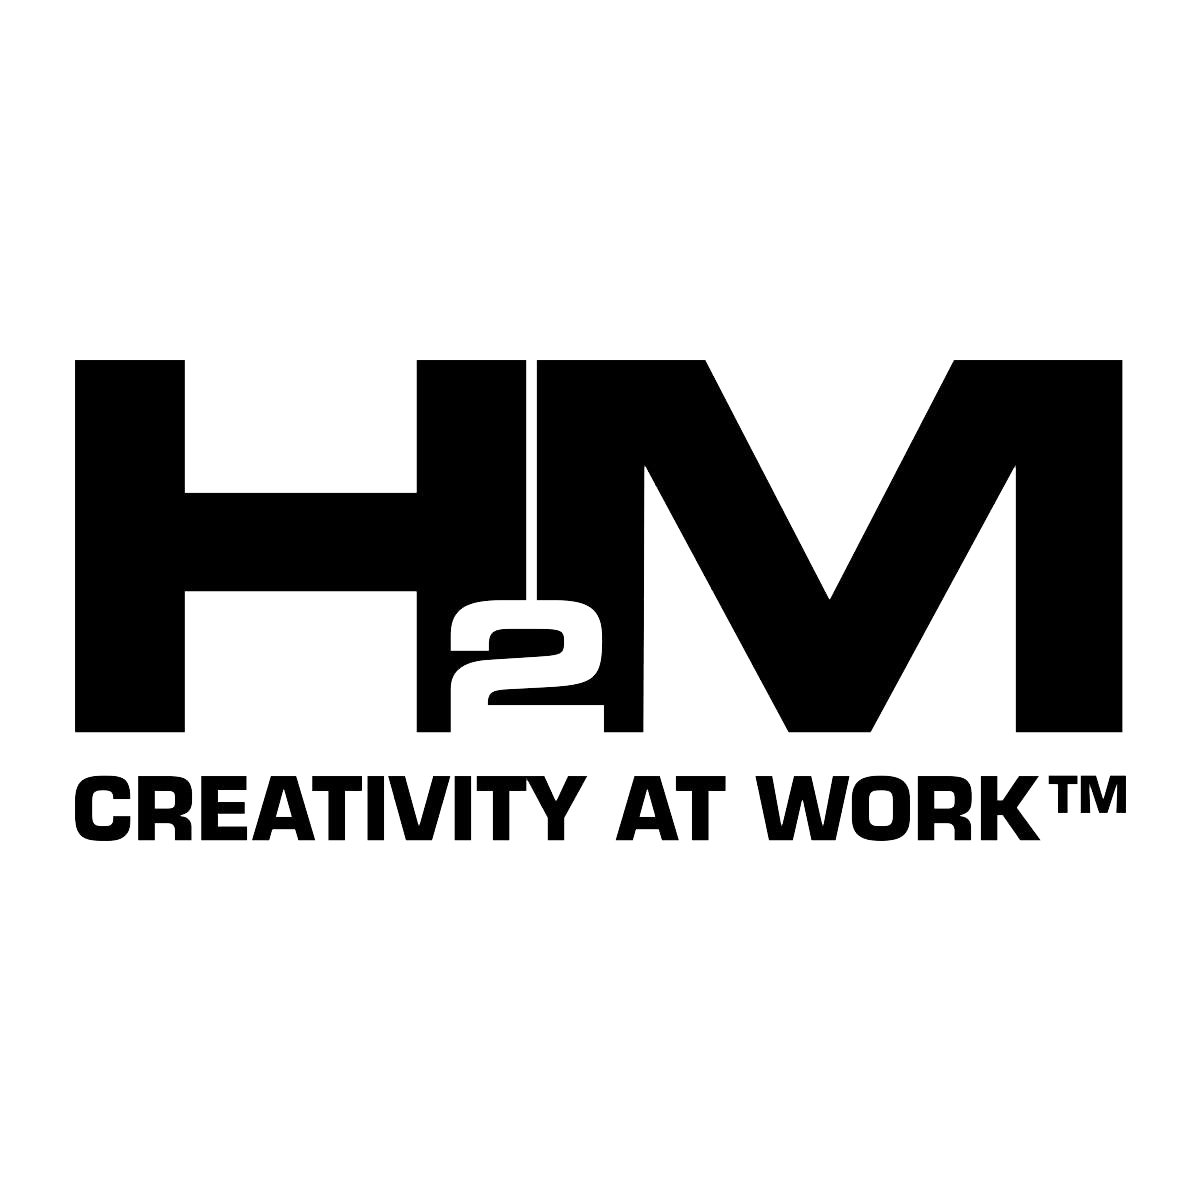 H2M Logo